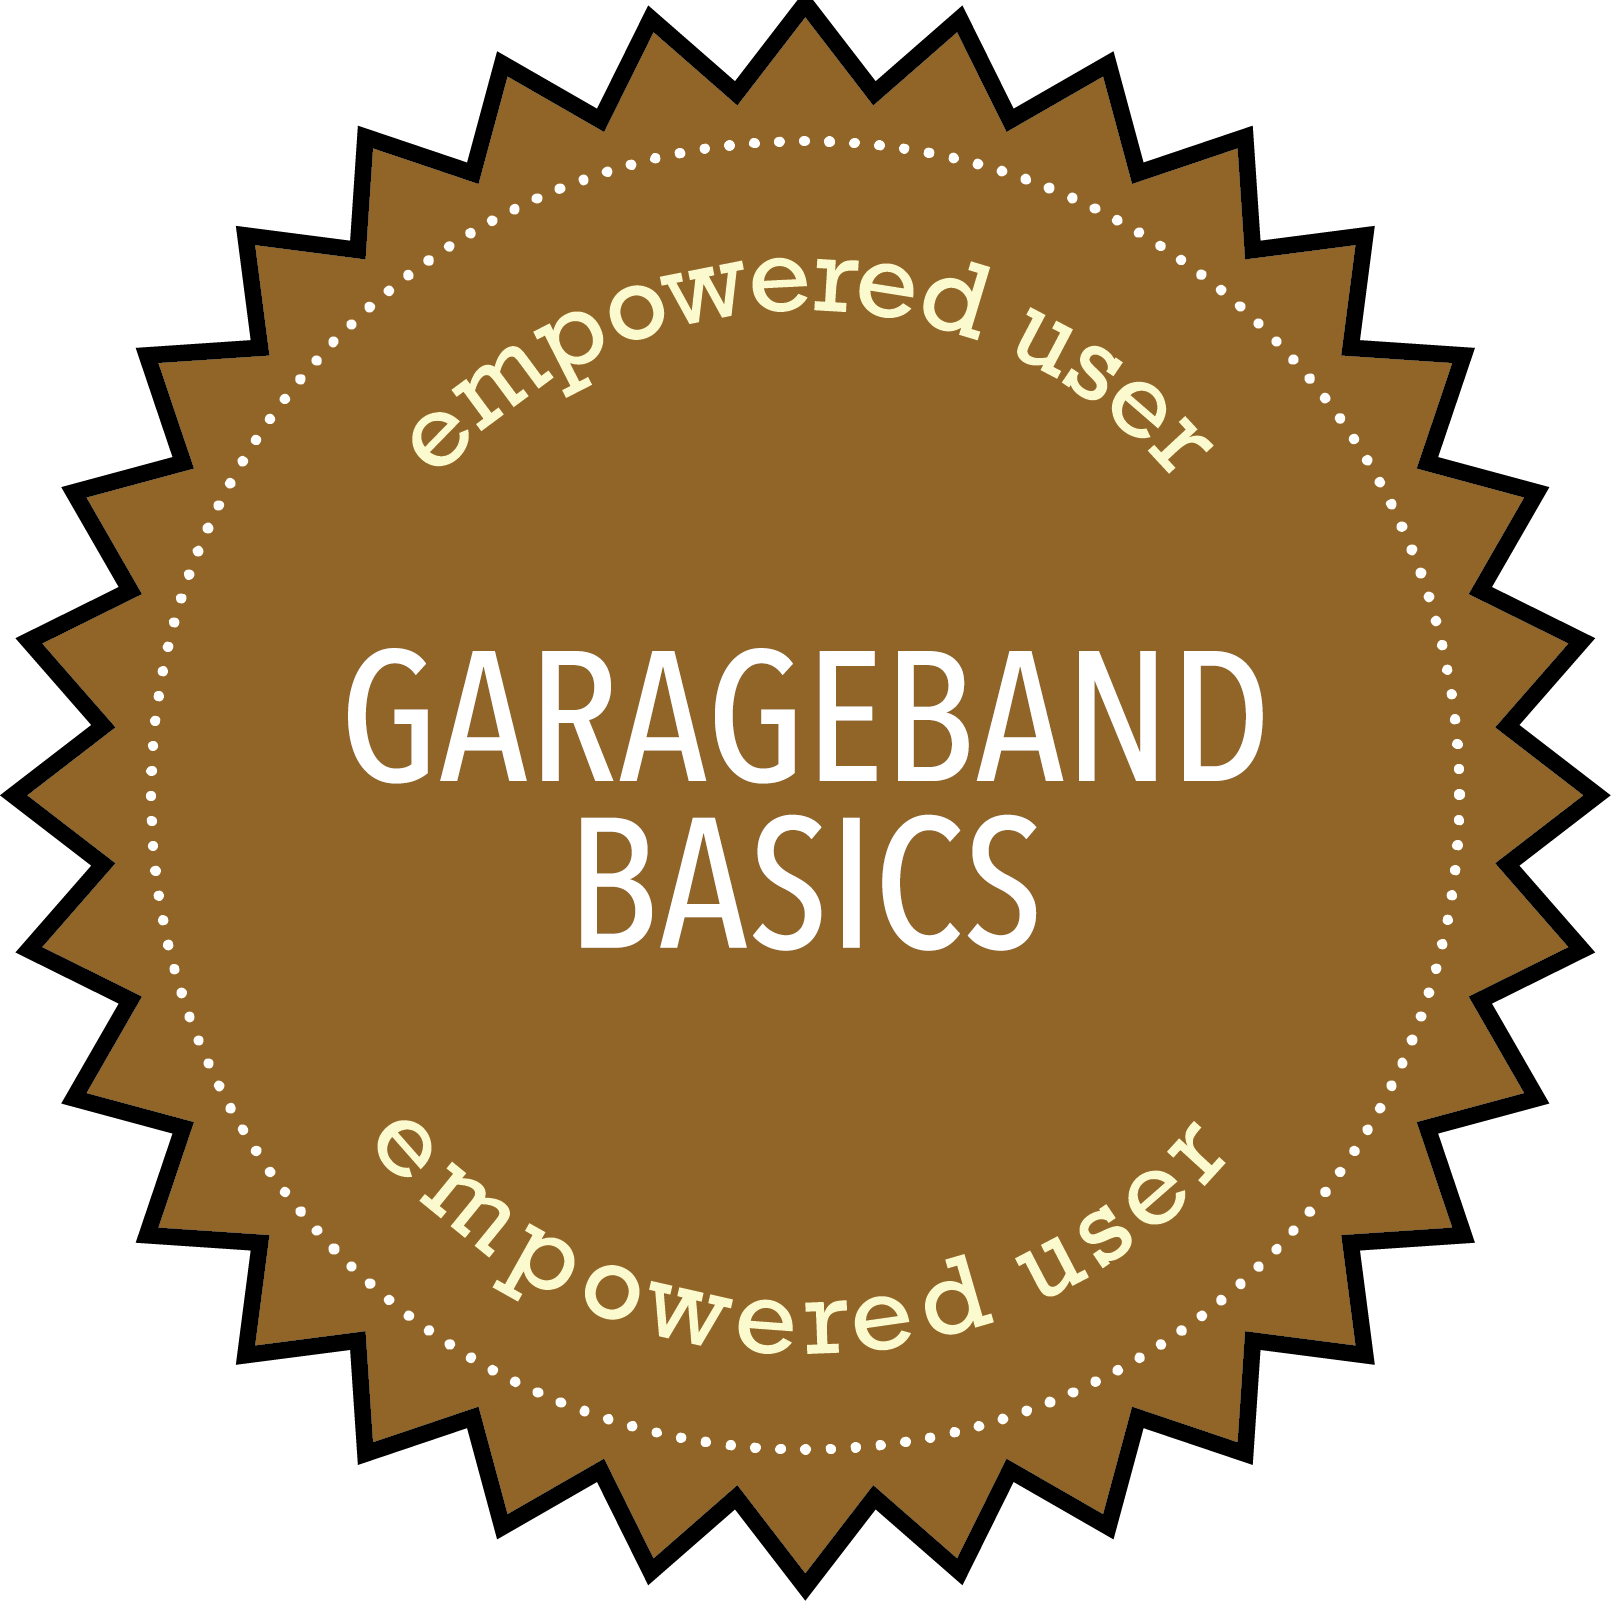 Empowered User: Garageband